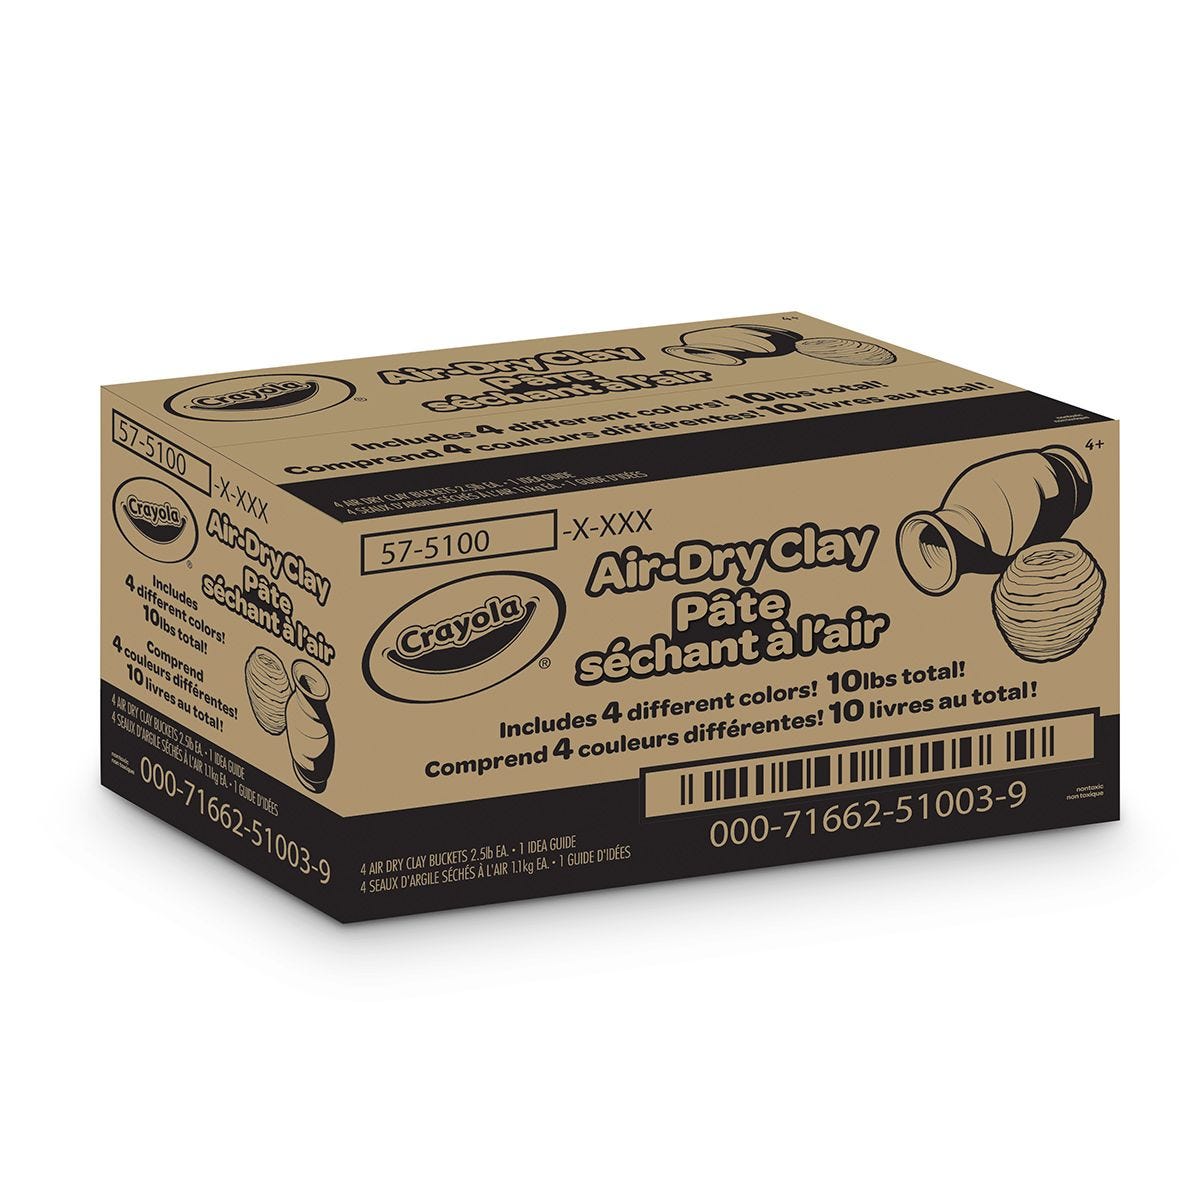 KLEAN KLAY Modeling Clay Natural Gray #20 Non-Drying 16 oz Box (a)